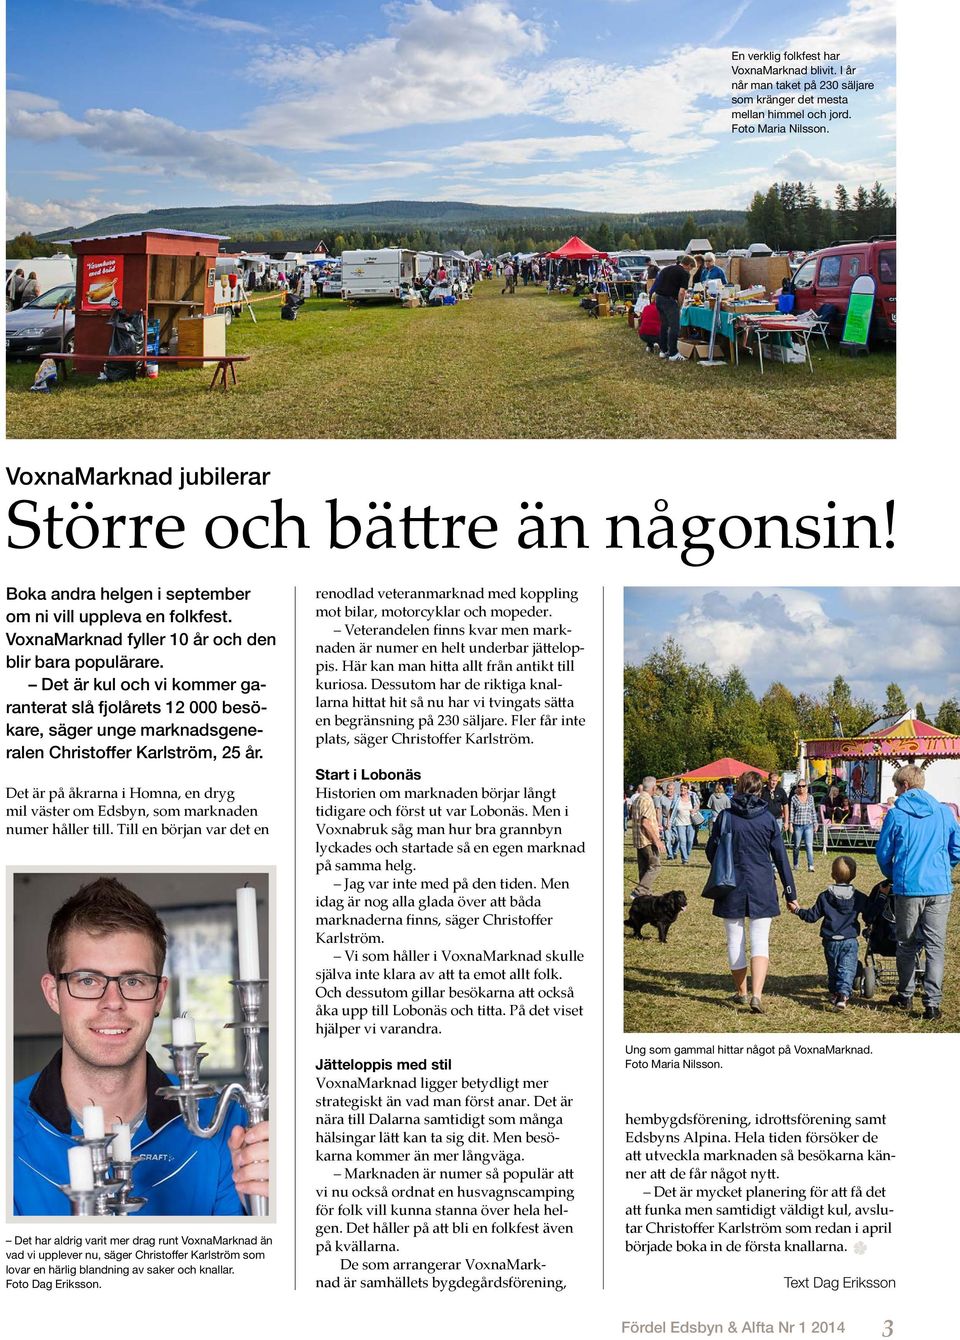 Det är kul och vi kommer garanterat slå fjolårets 12 000 besökare, säger unge marknadsgeneralen Christoffer Karlström, 25 år.